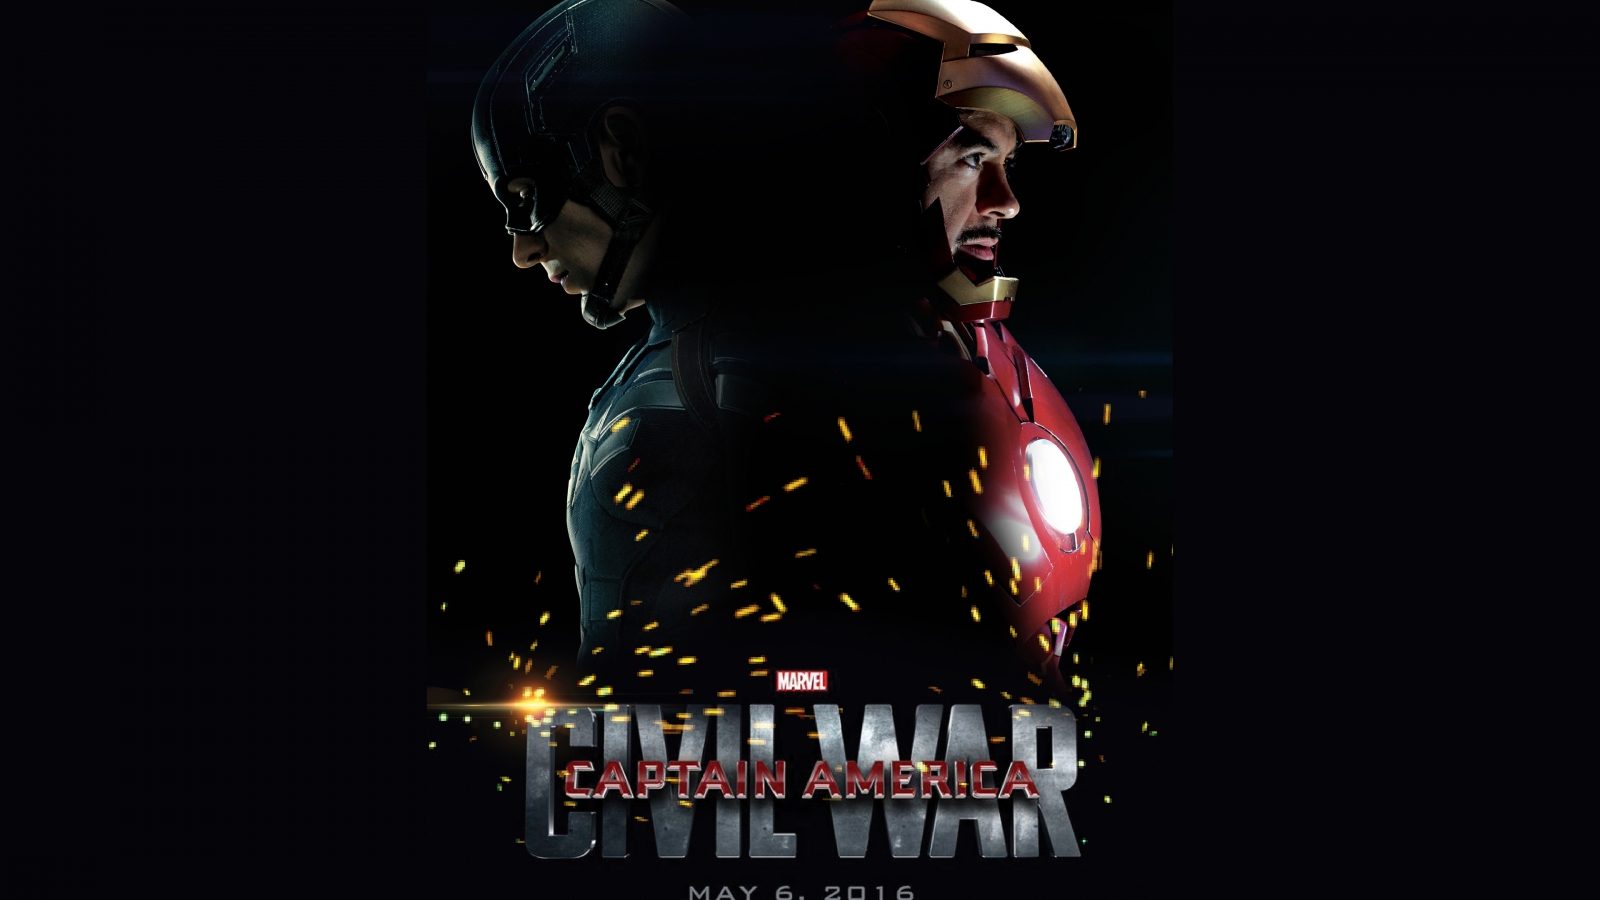 Captain America Civil War 2016 for 1600 x 900 HDTV resolution